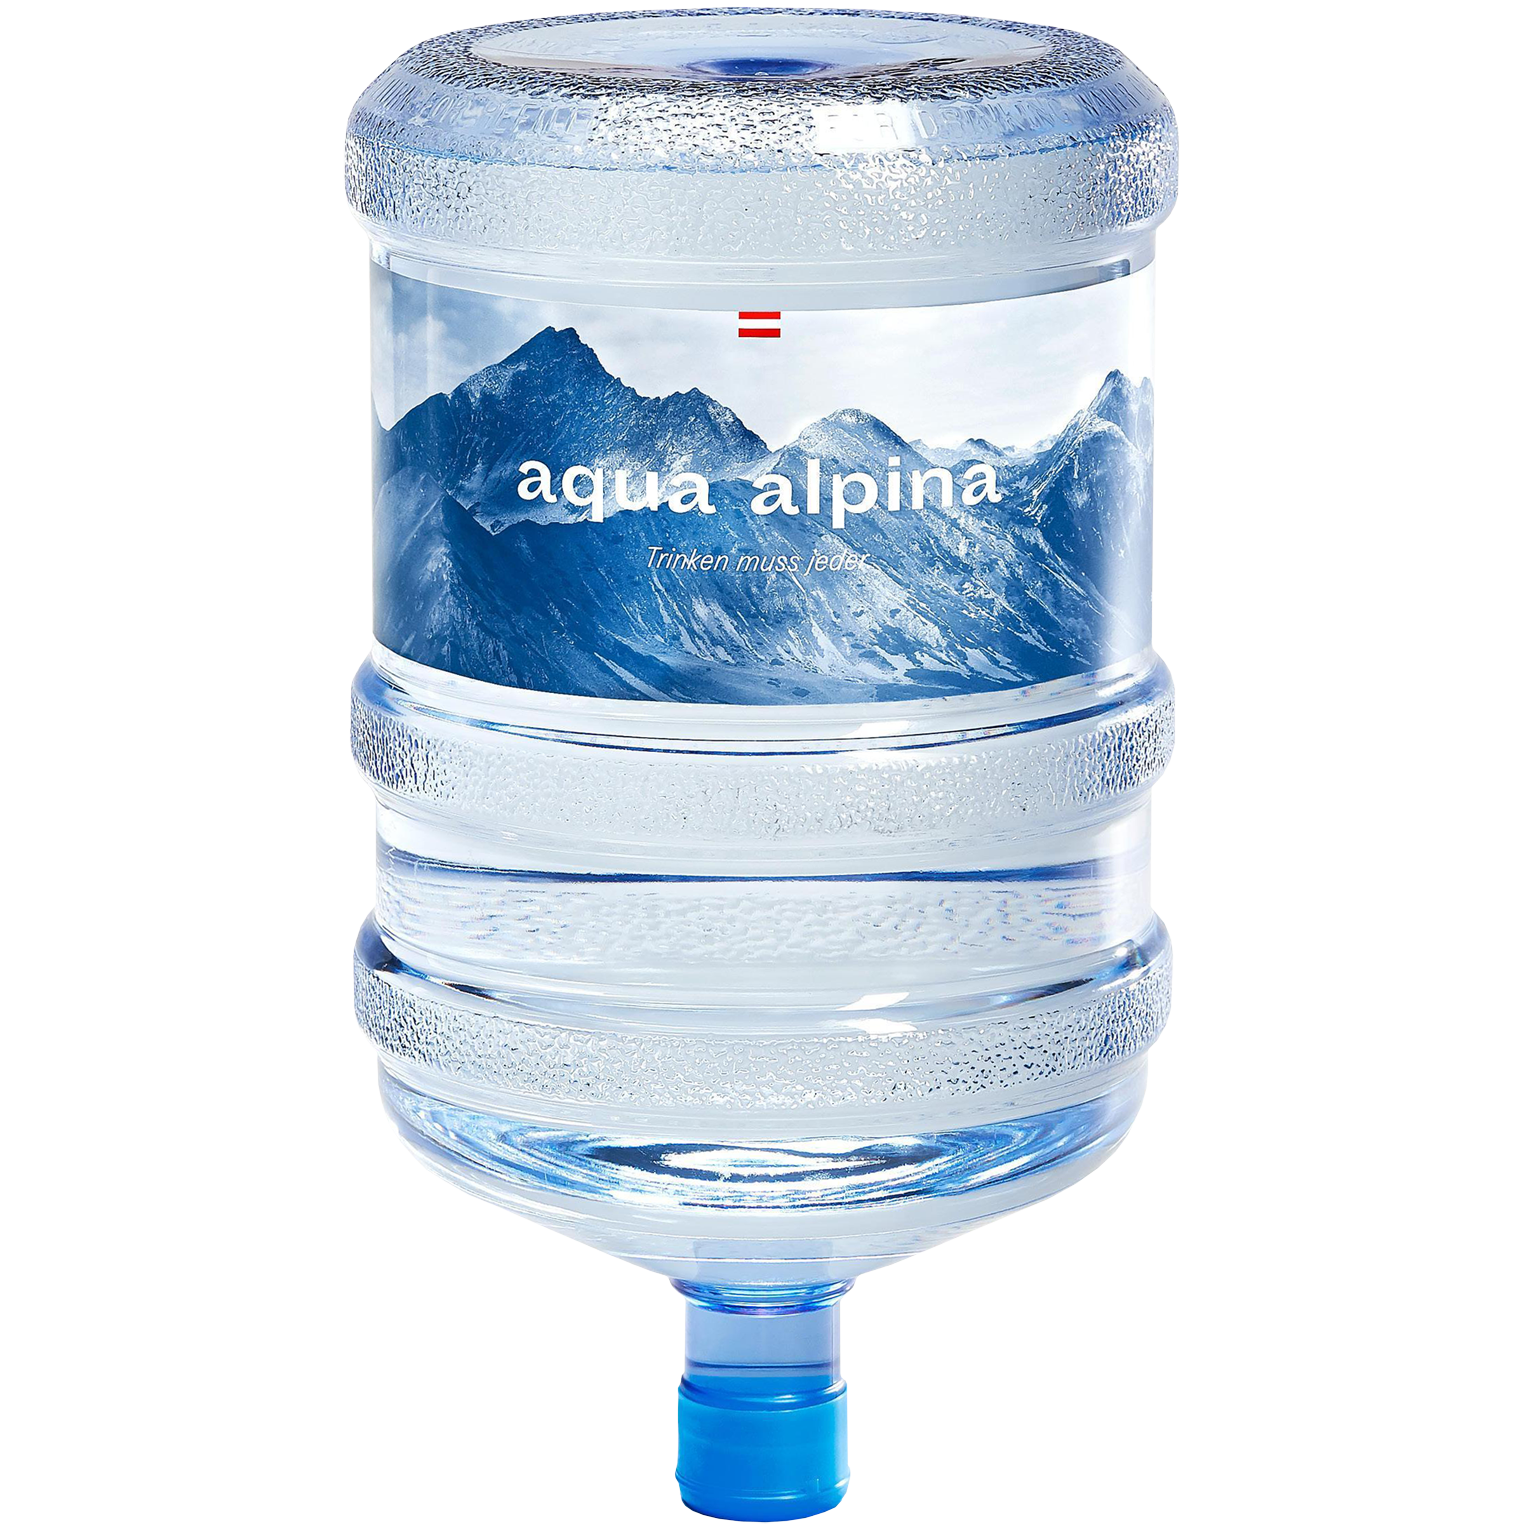 Zu sehen ist eine Flasche von Aqua Alpina